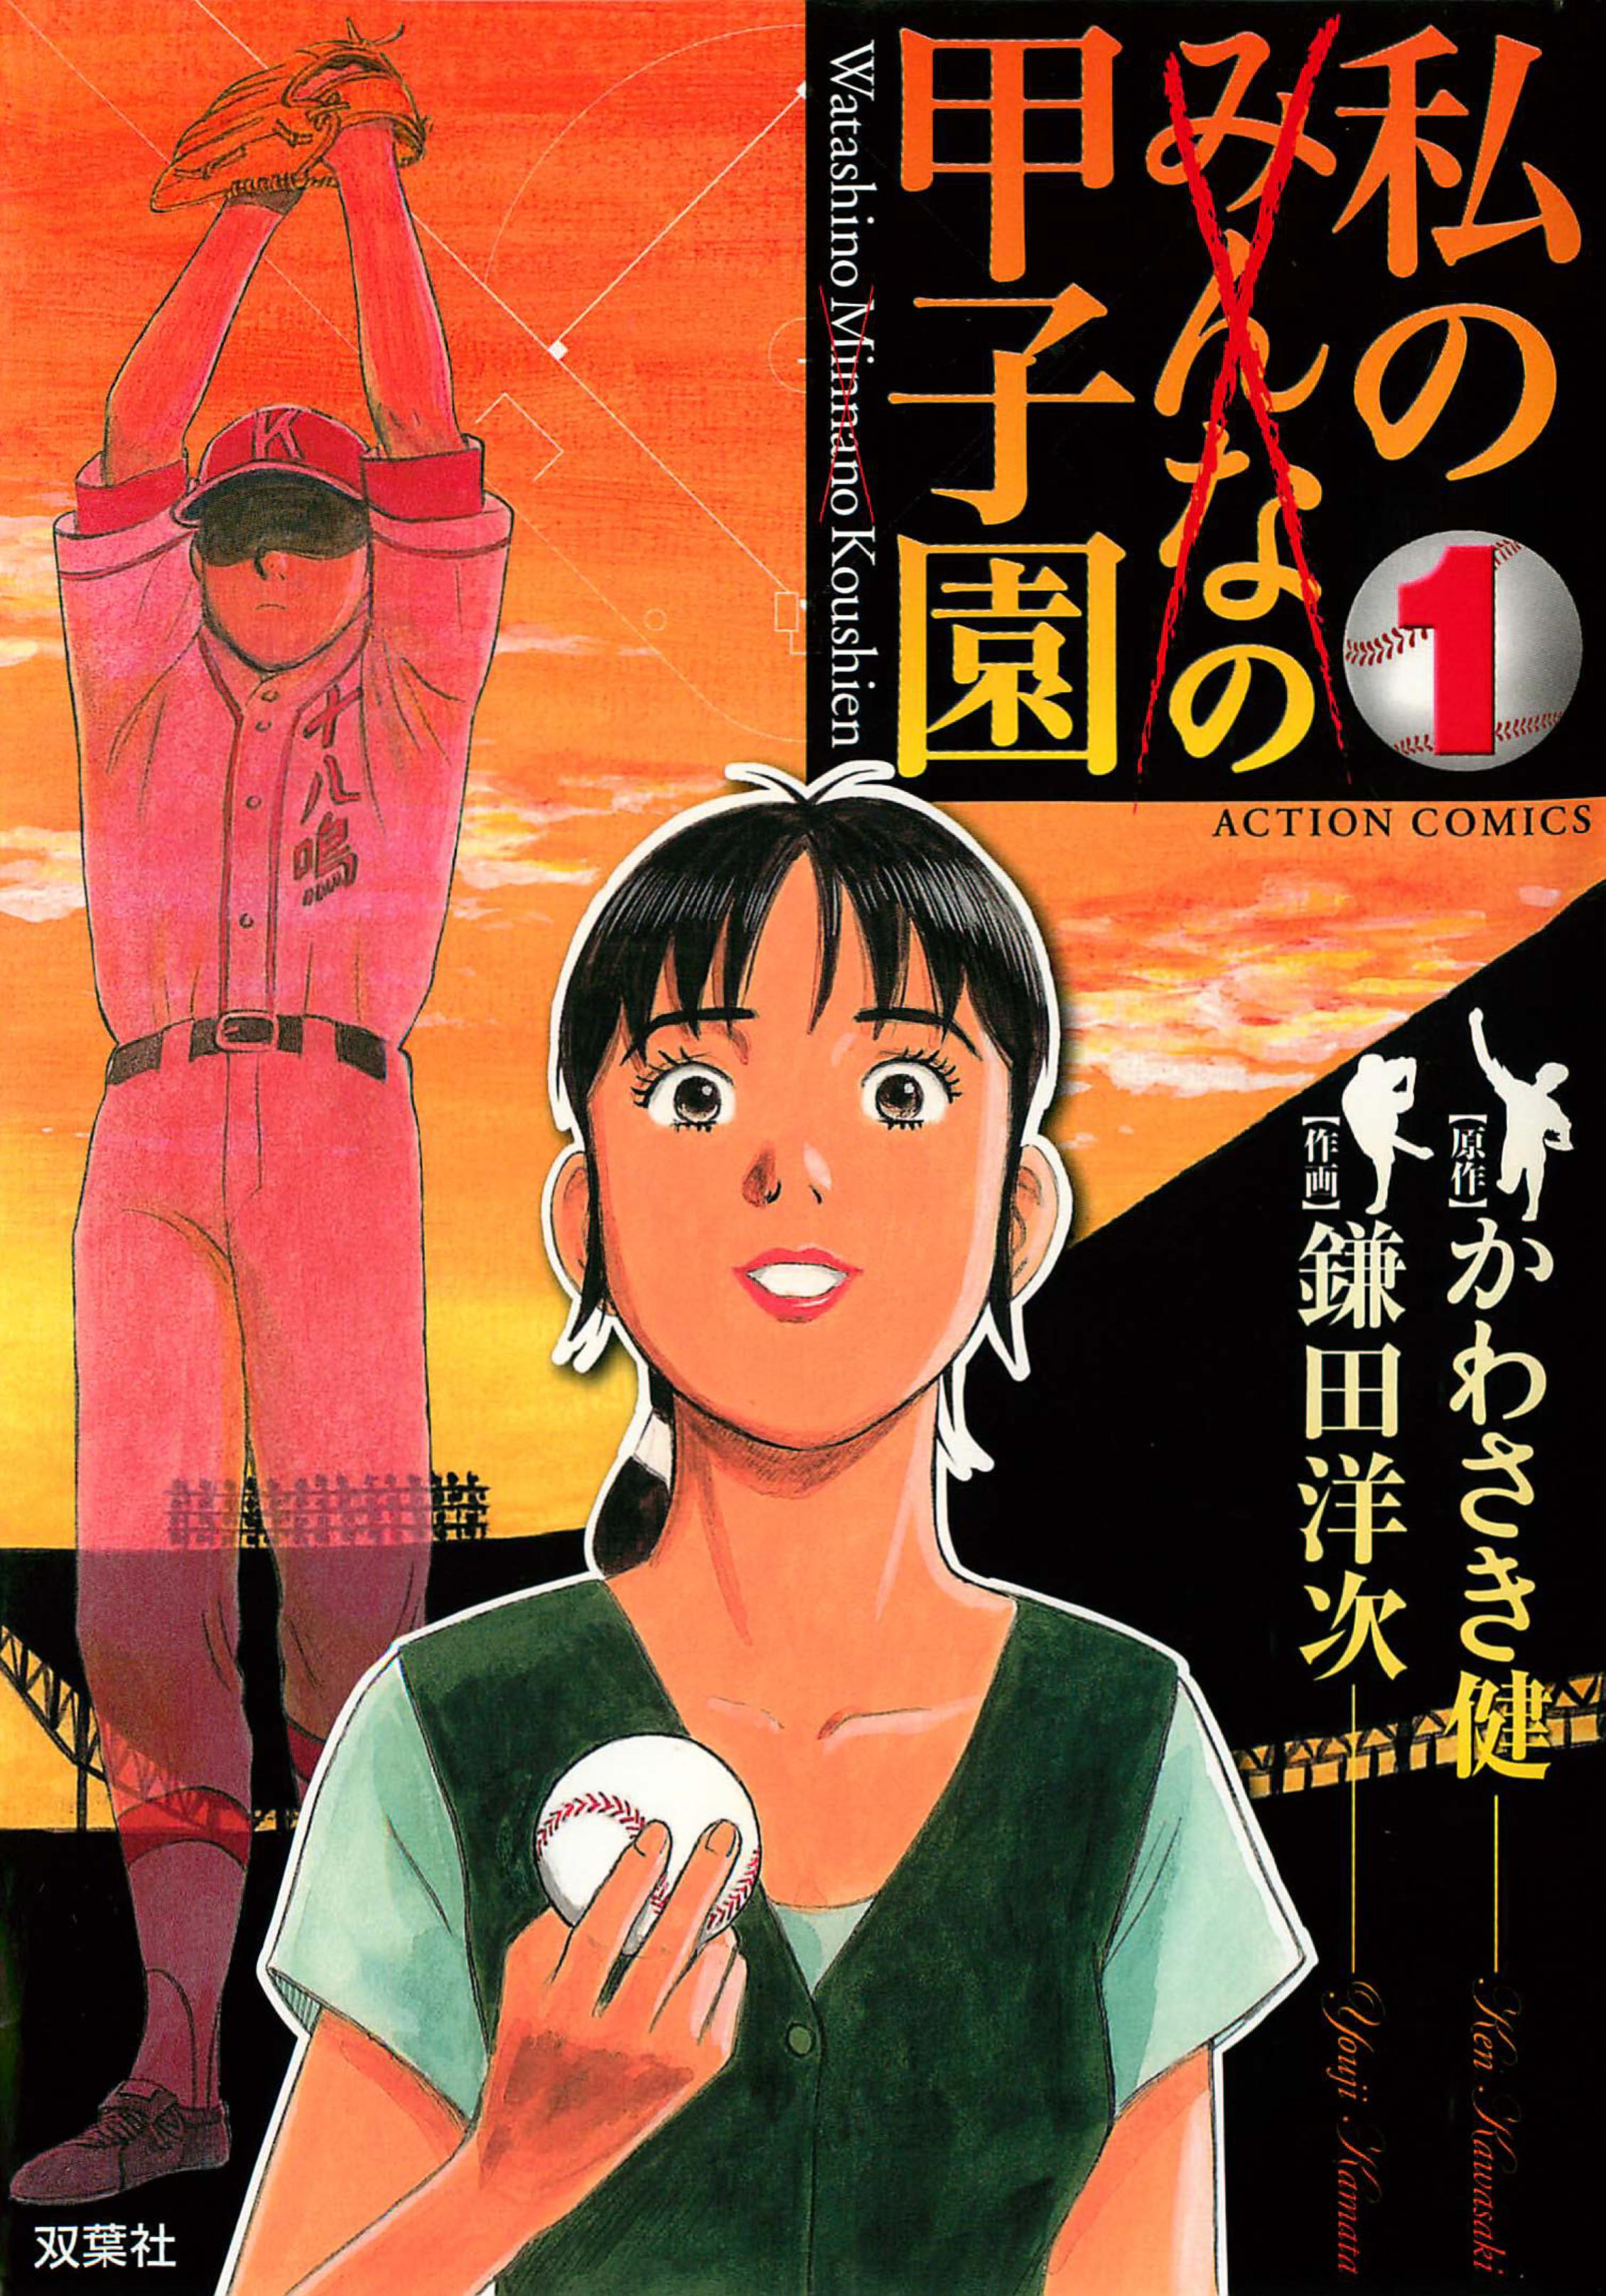 Watashi no Koshien volume 1 review